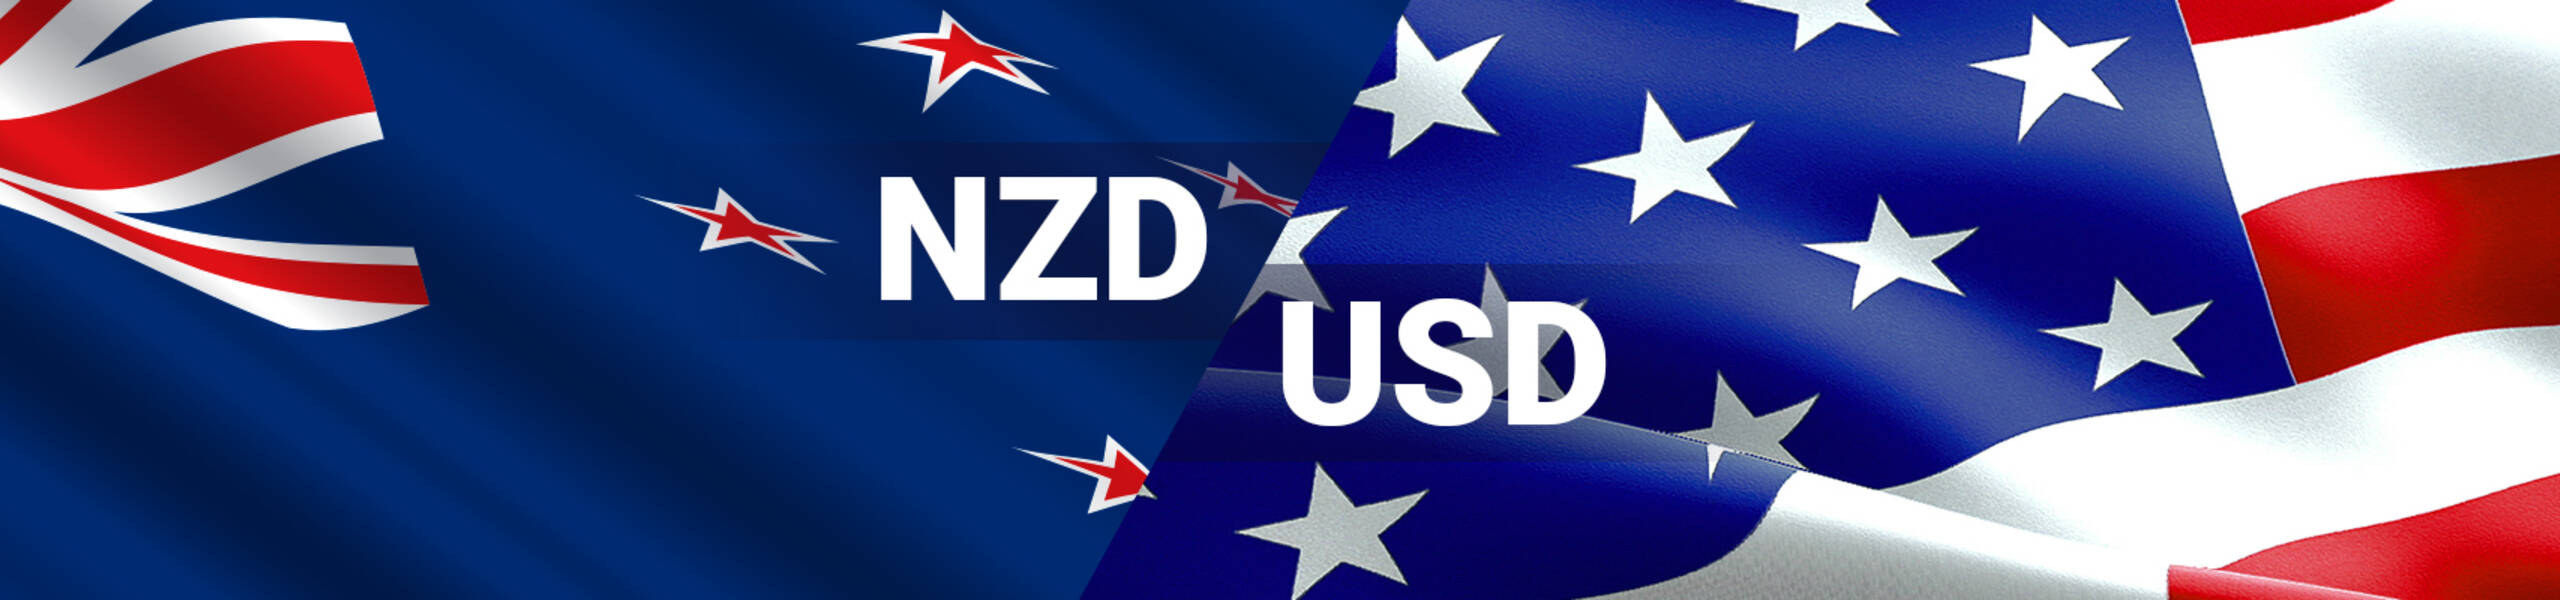 NZD/USD siguiendo canal alcista por encima de 0.7050